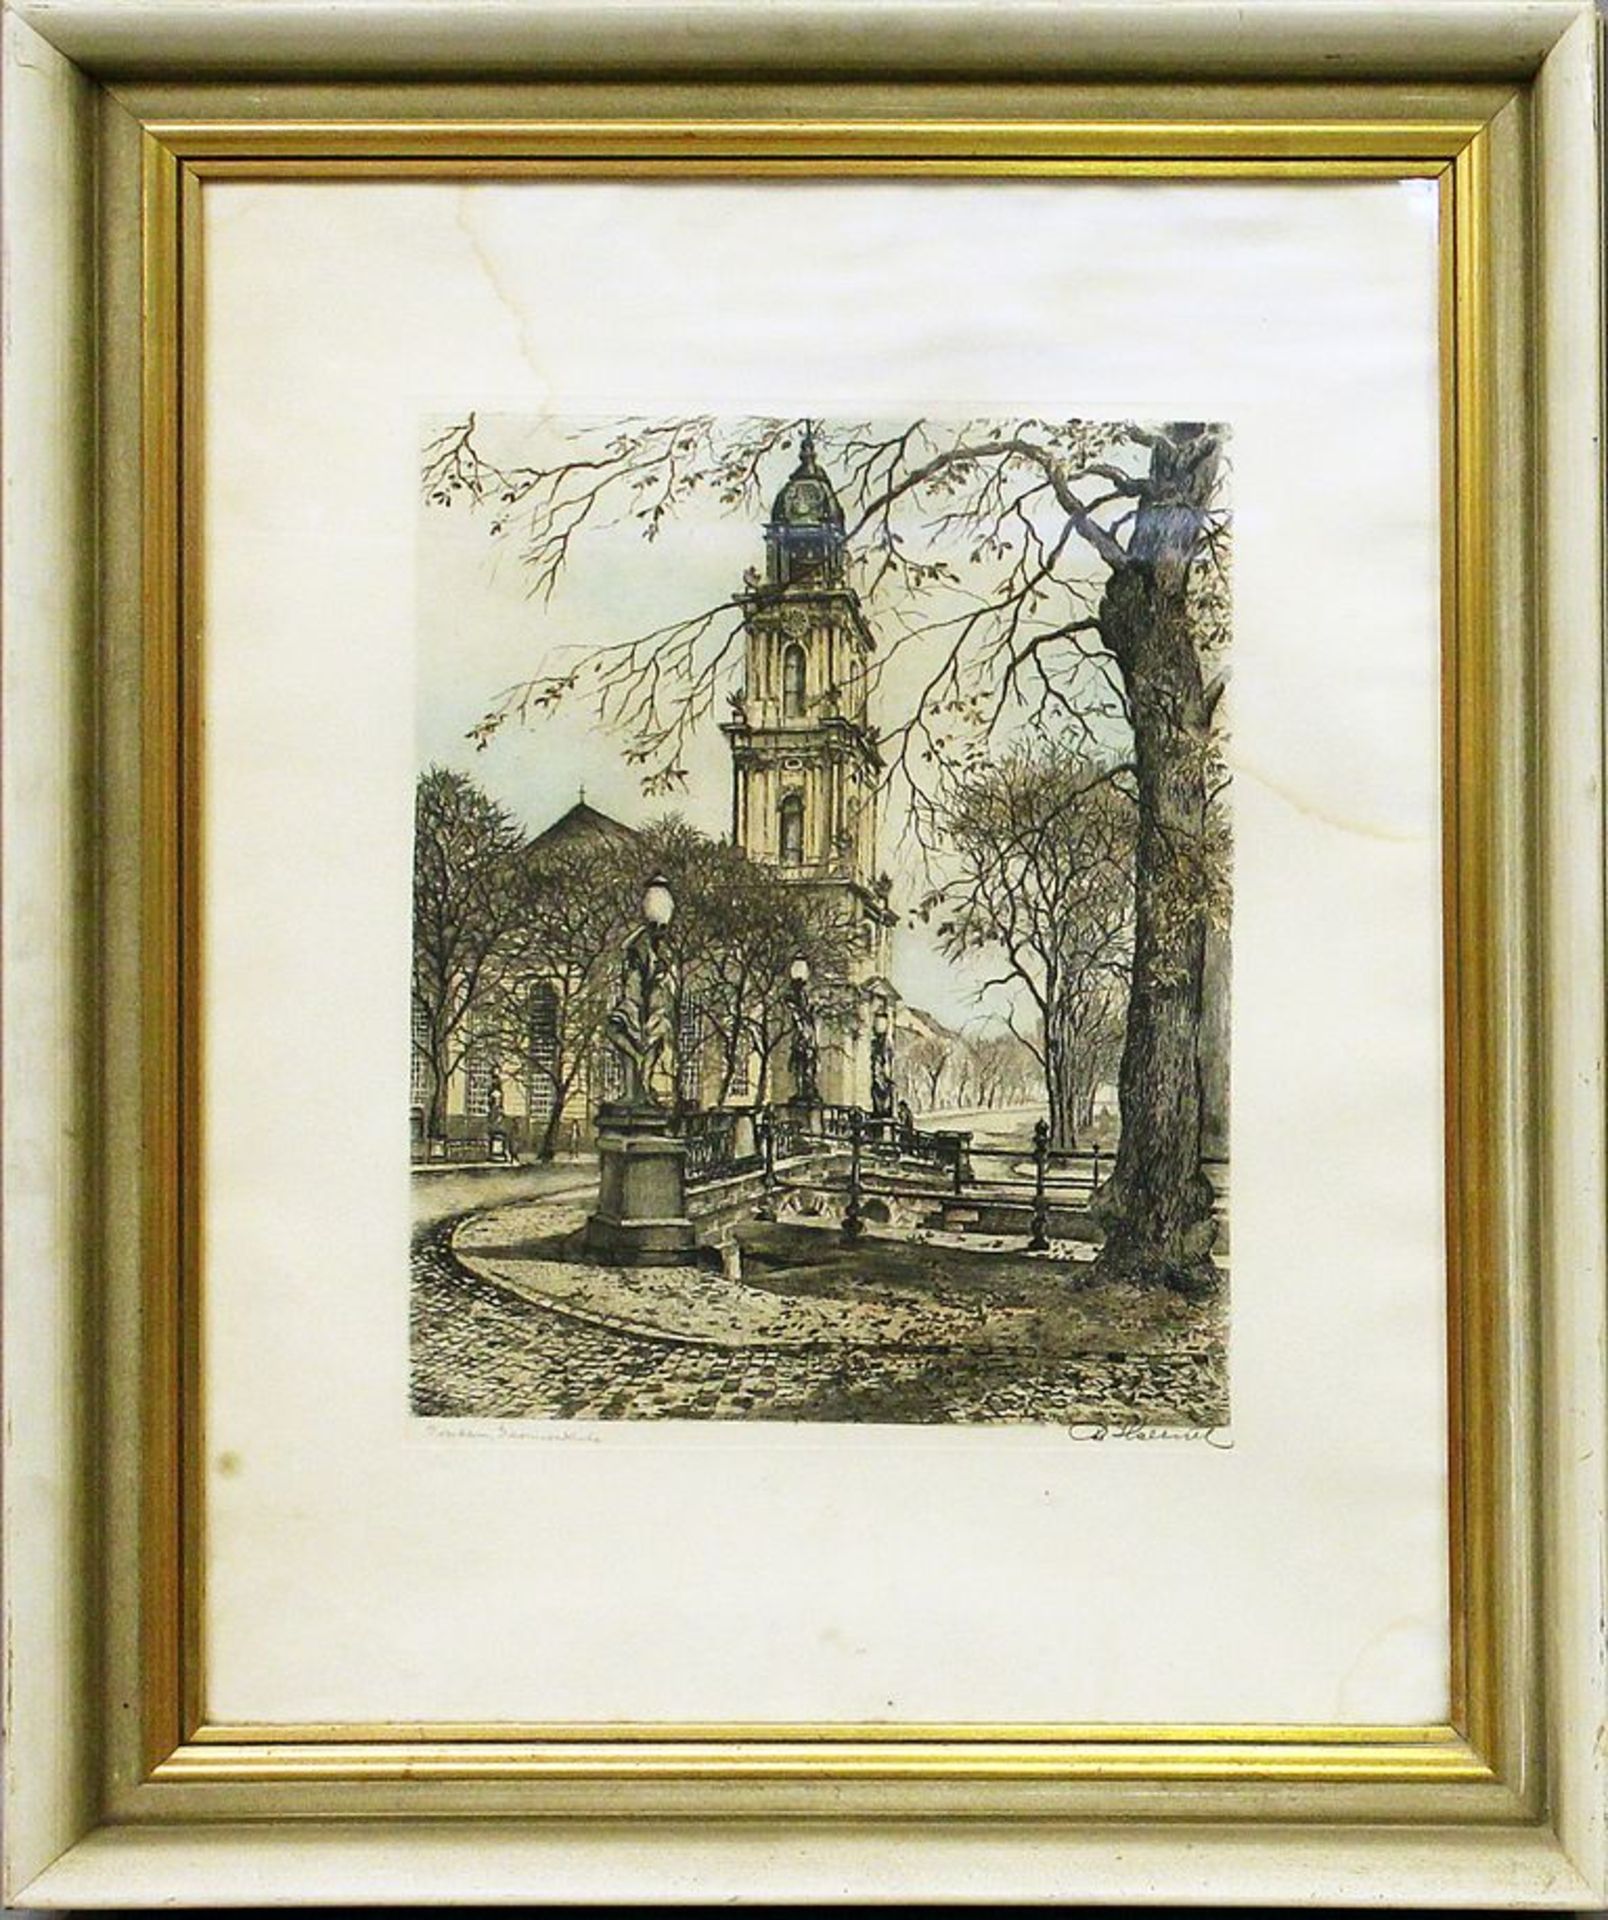 Unbekannter Künstler (1. Hälfte 20. Jh.) "Potsdam, Garnisonskirche", so re. u. mit B